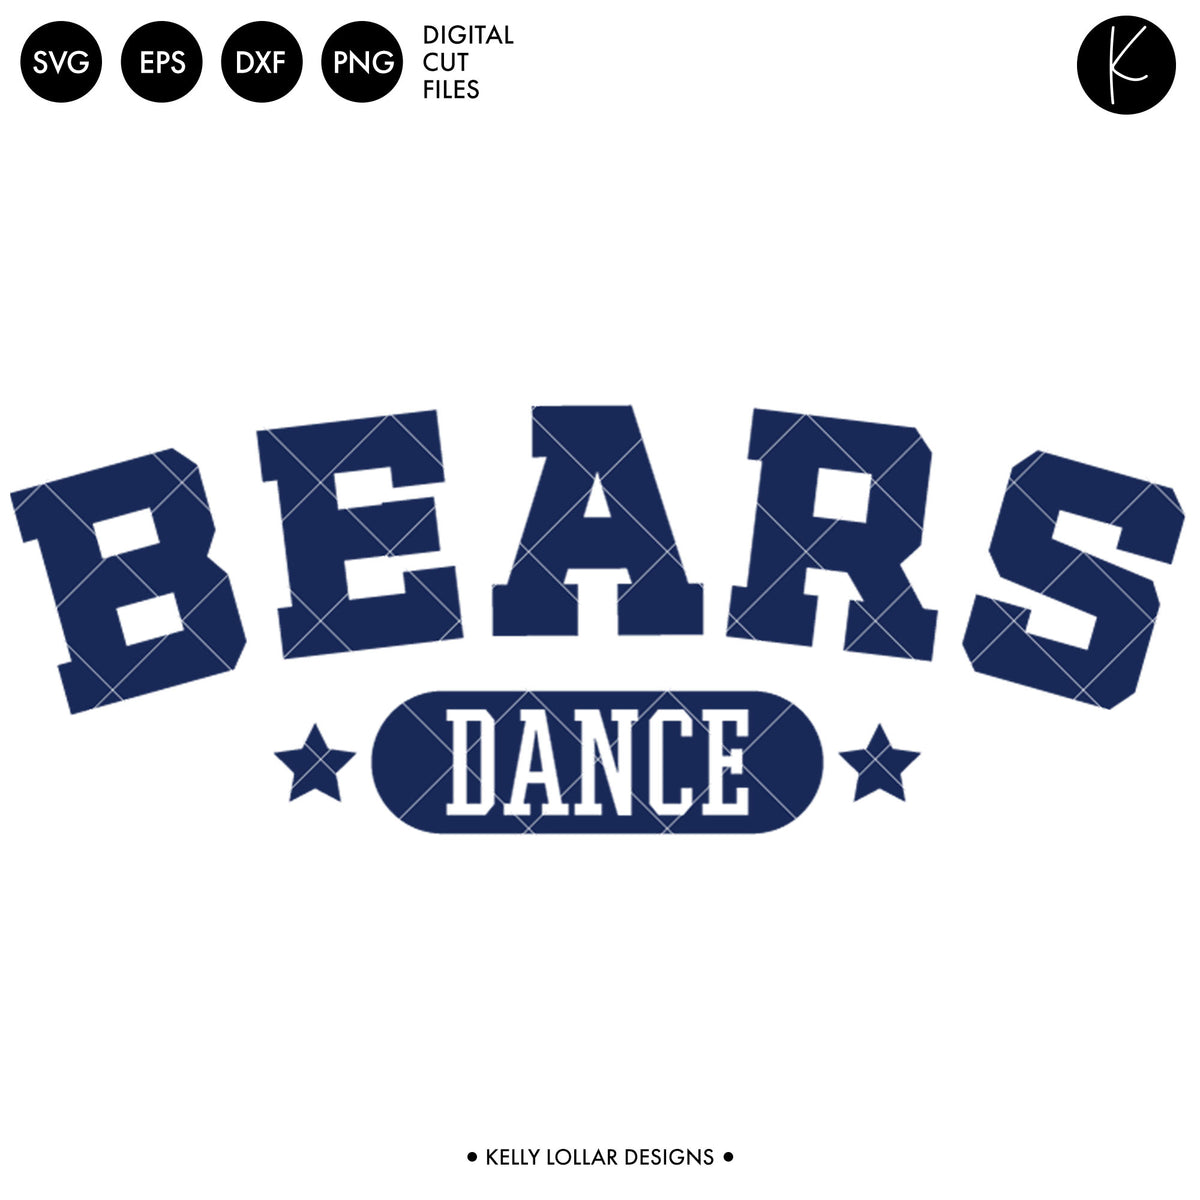 Bears Dance Bundle | SVG DXF EPS PNG Cut Files